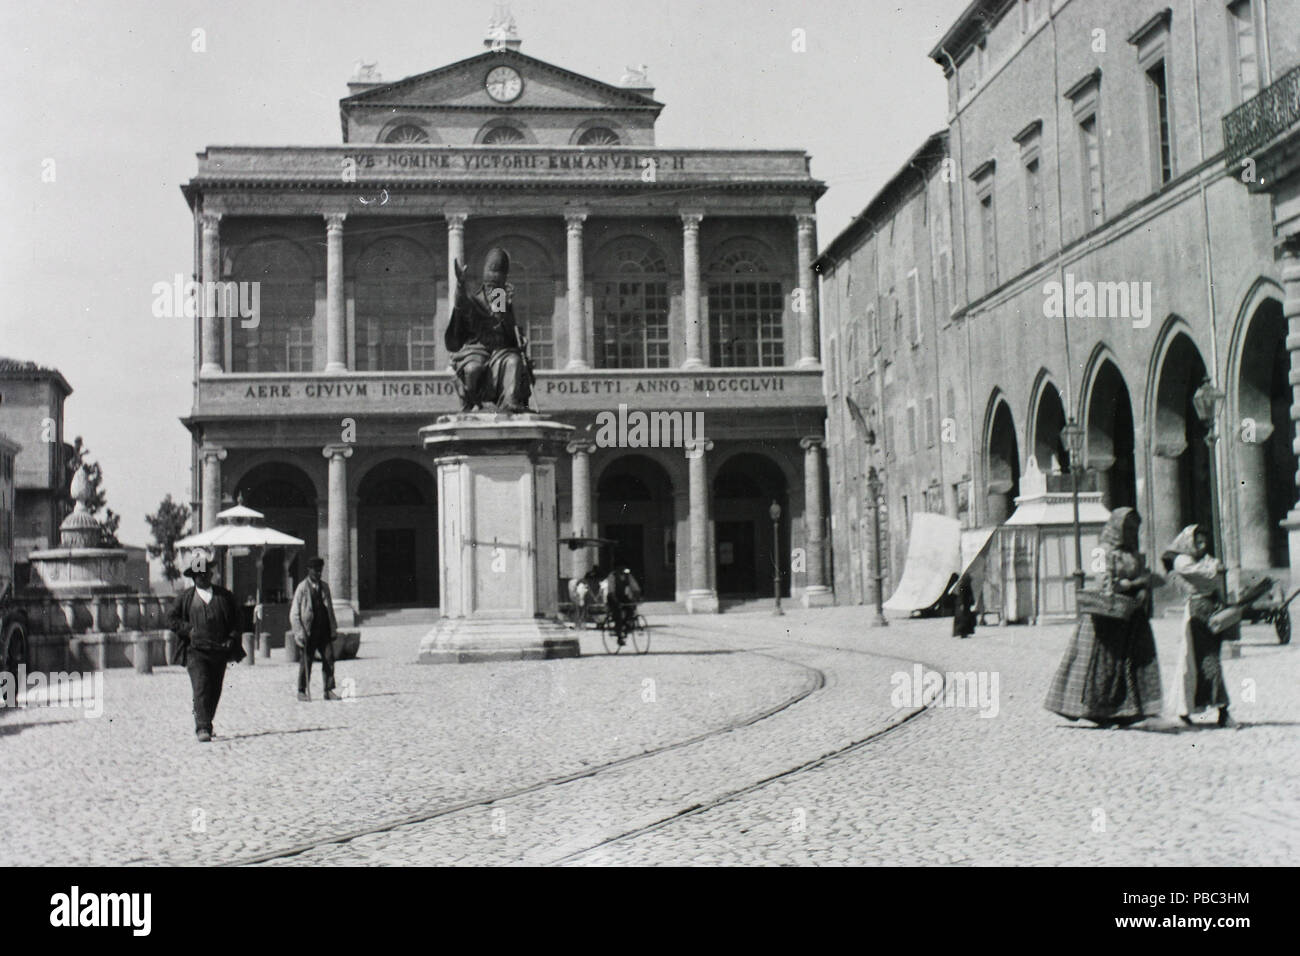 1190 Piazza Cavour, szembem un Teatro A. Galli, jobbra un palazzo dell'arengo. Fortepan 86234 Foto Stock